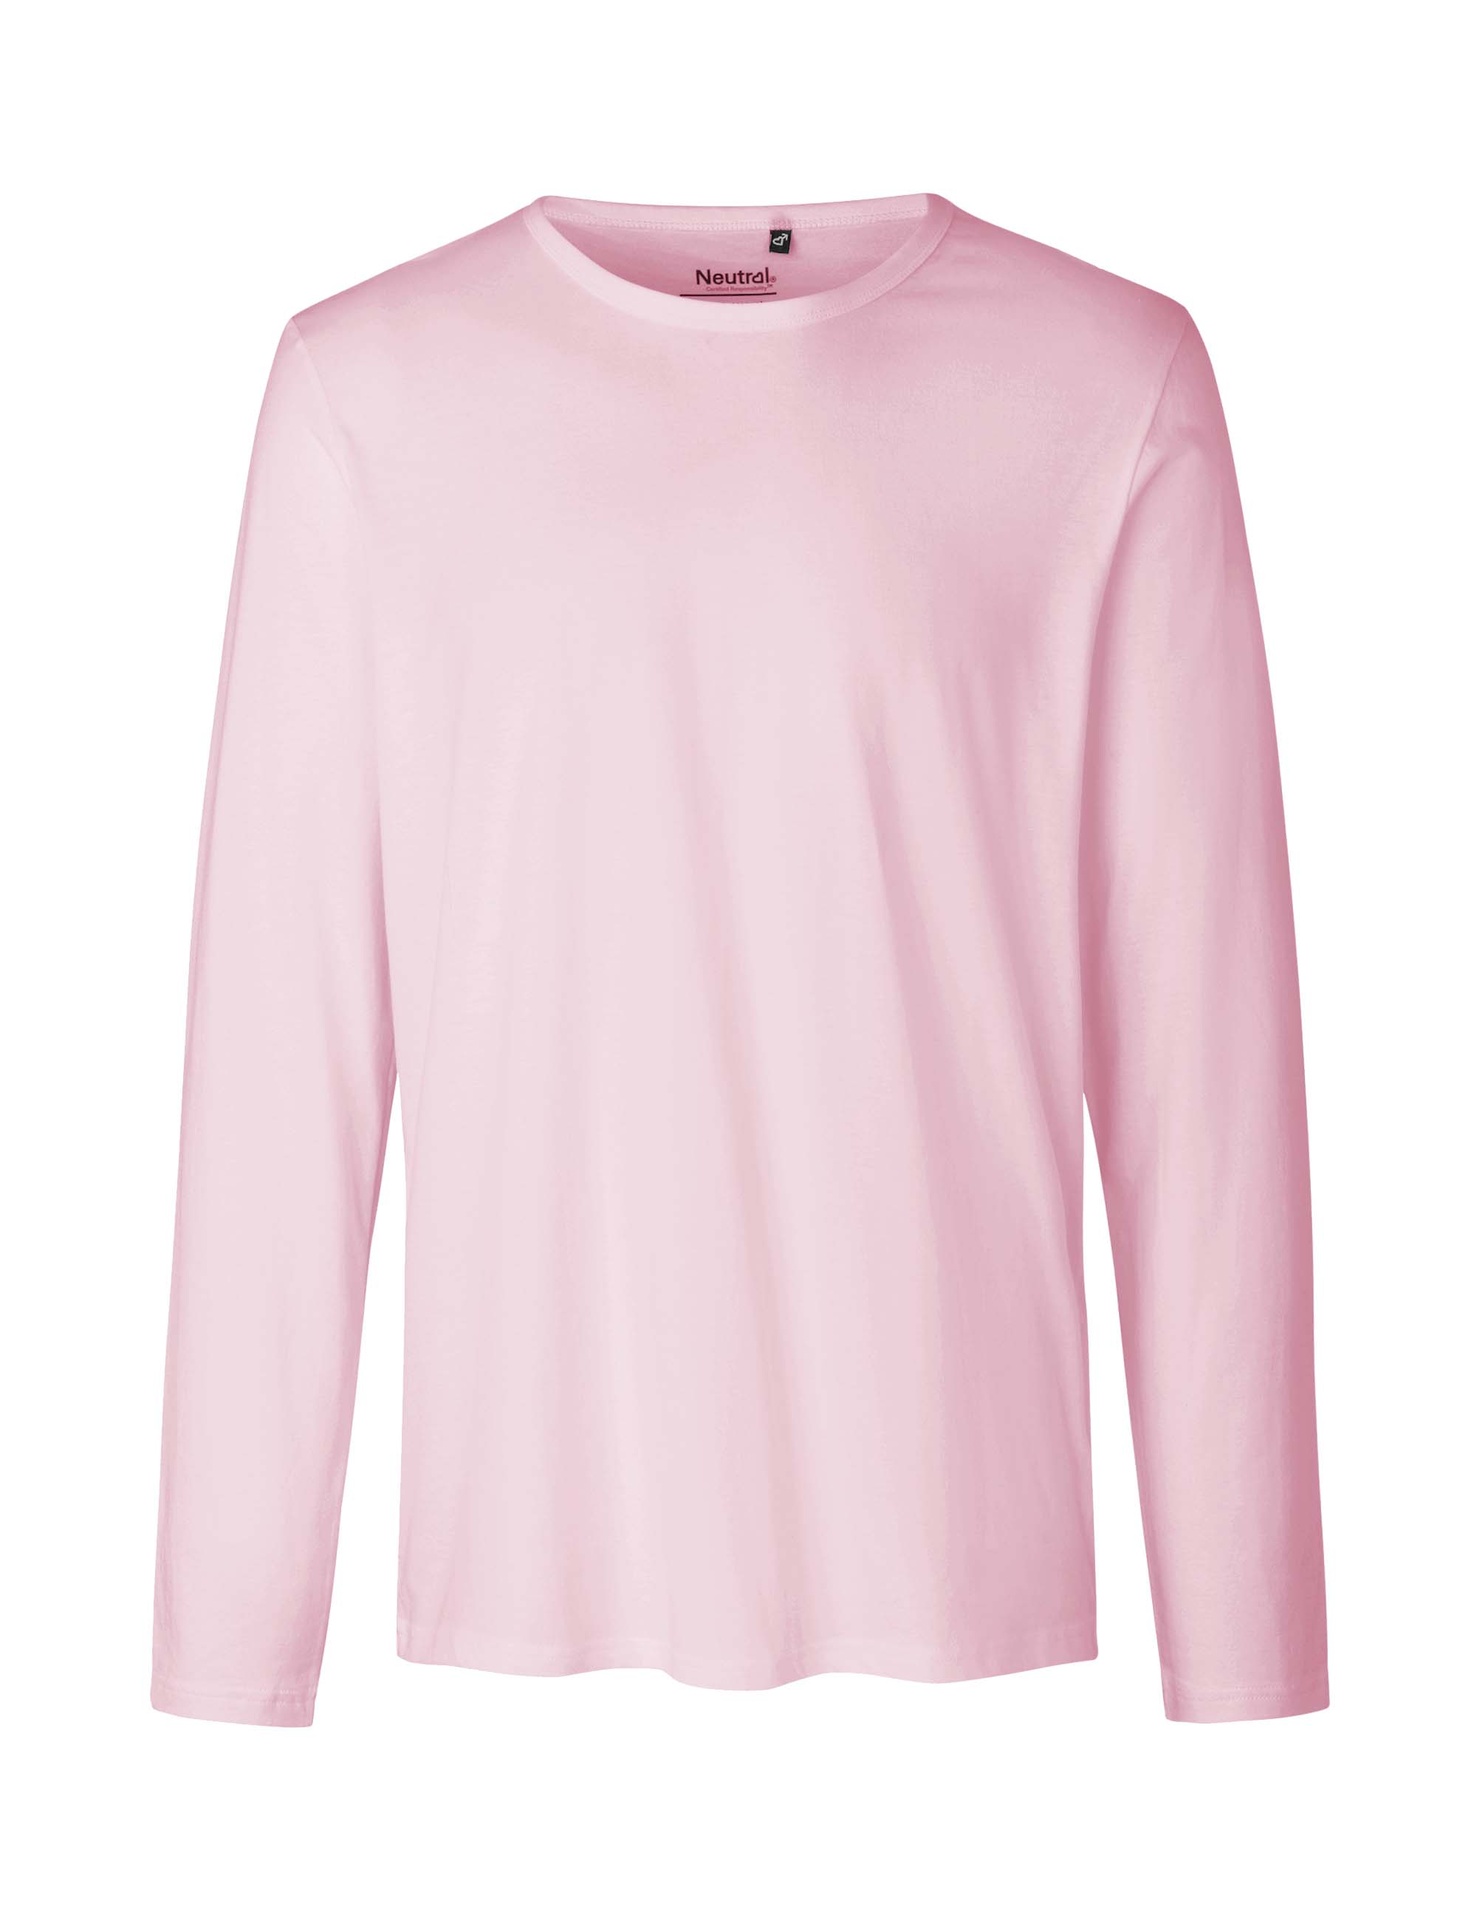 [PR/02397] Mens Long Sleeve T-Shirt (Light Pink 20, 3XL)